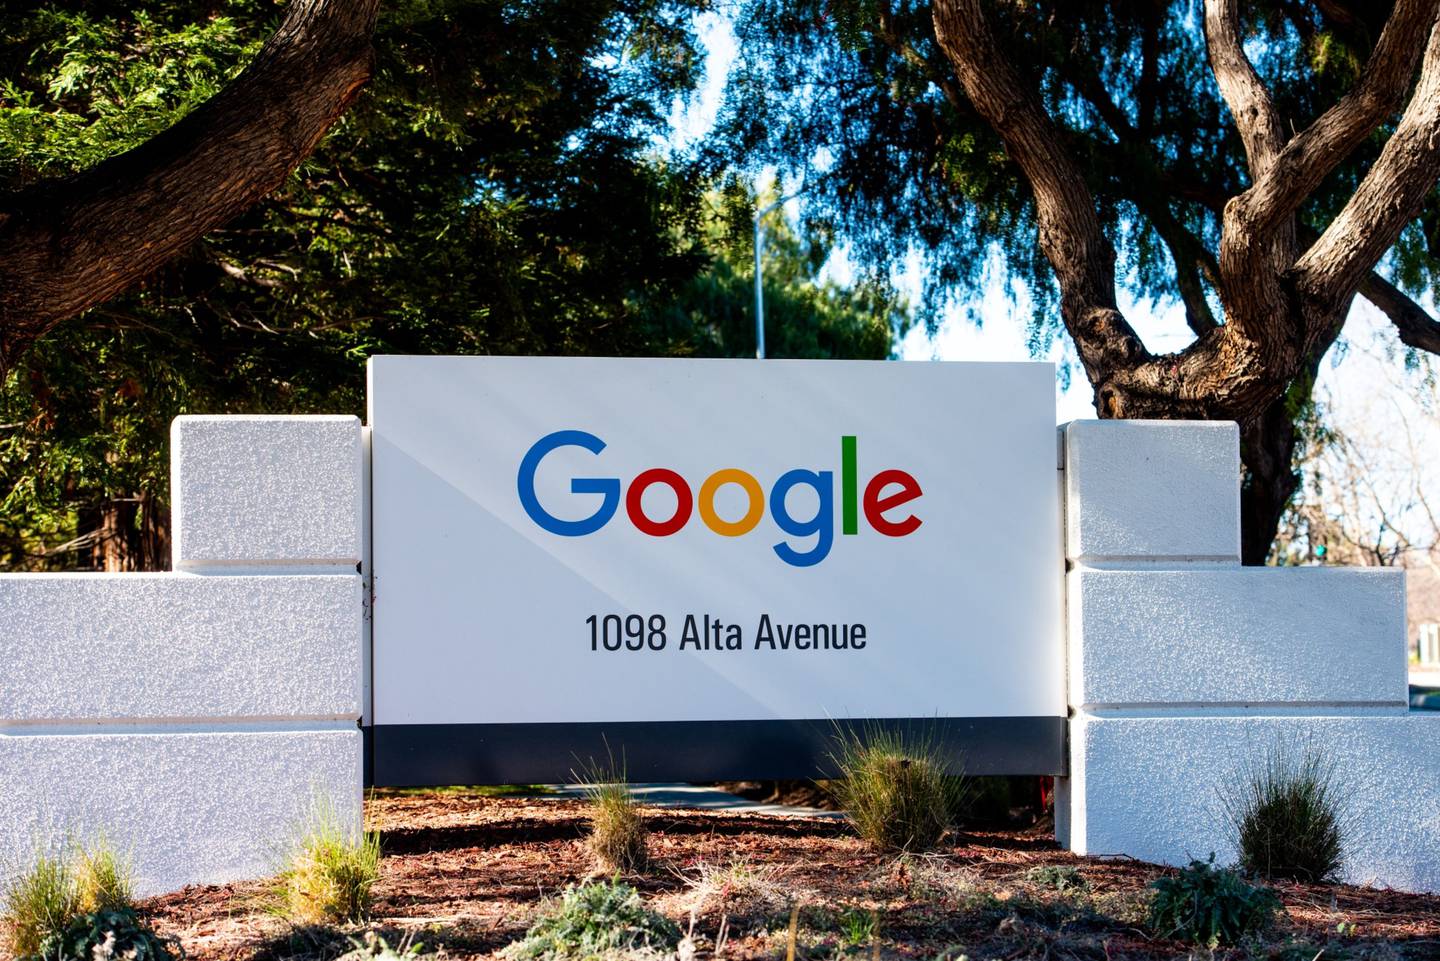 La sede de Google